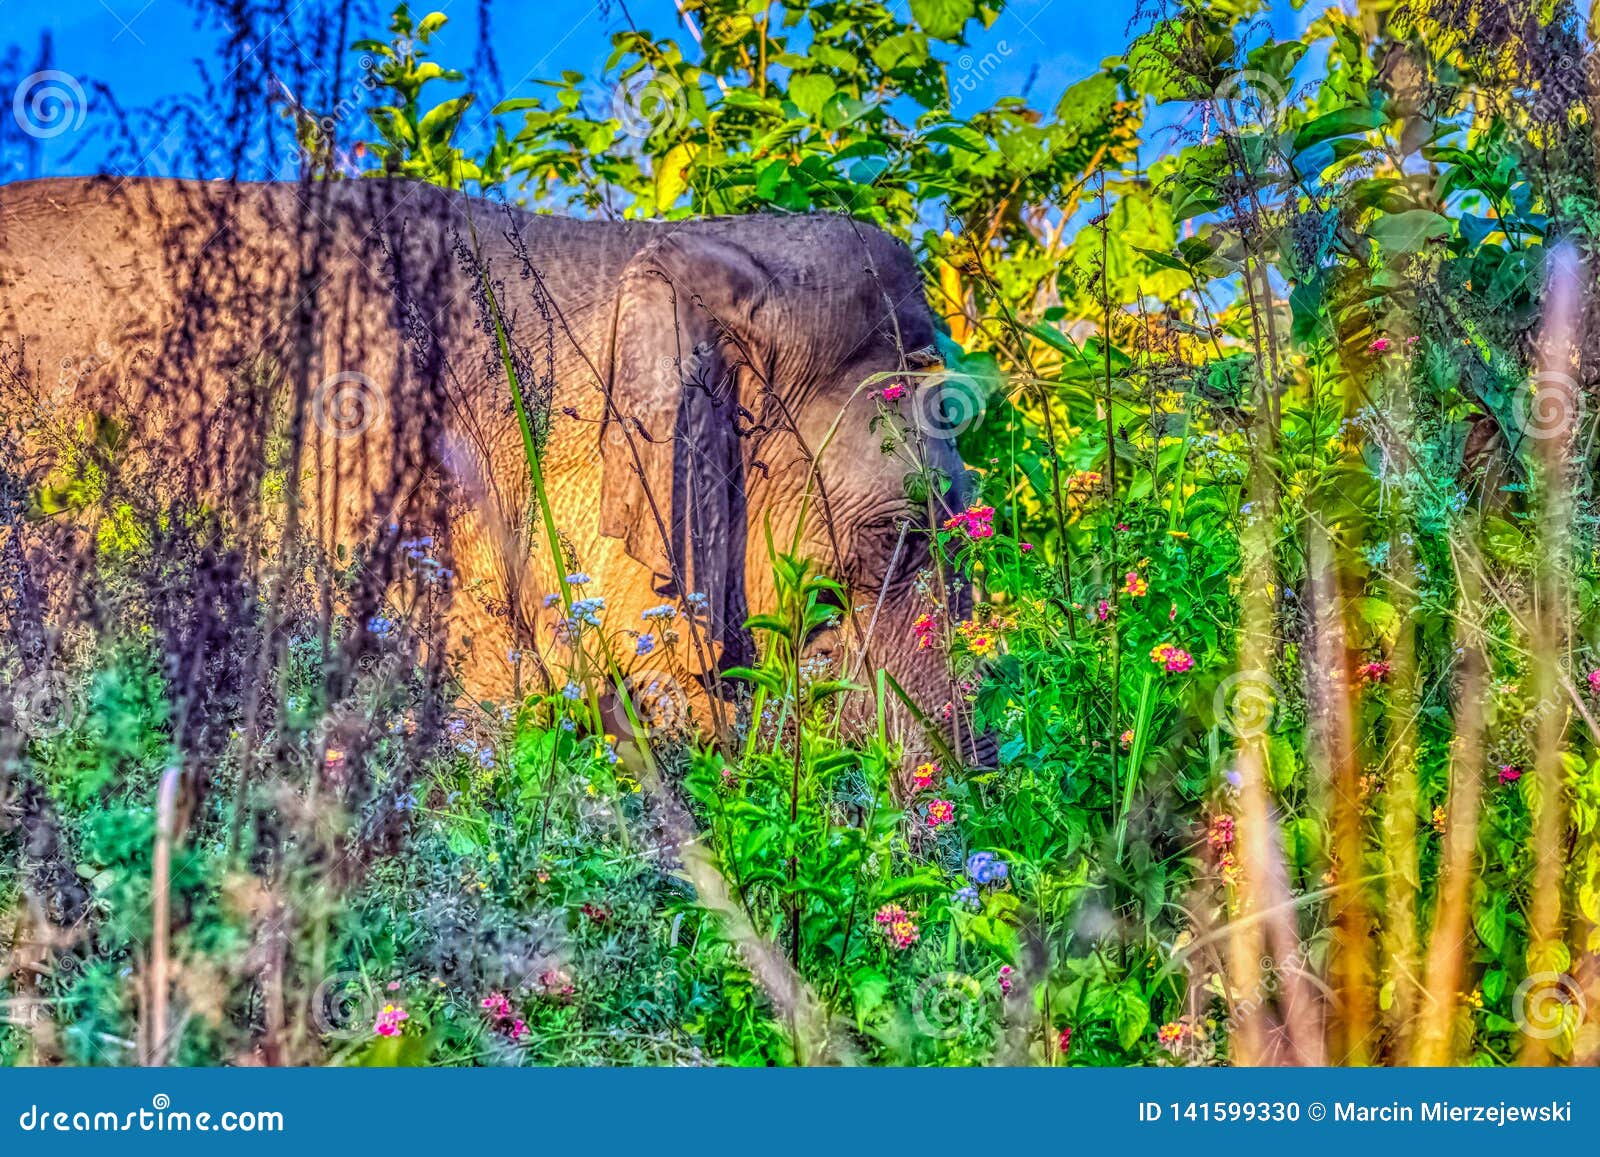 indischer elefant versteckt im busch  jim corbett